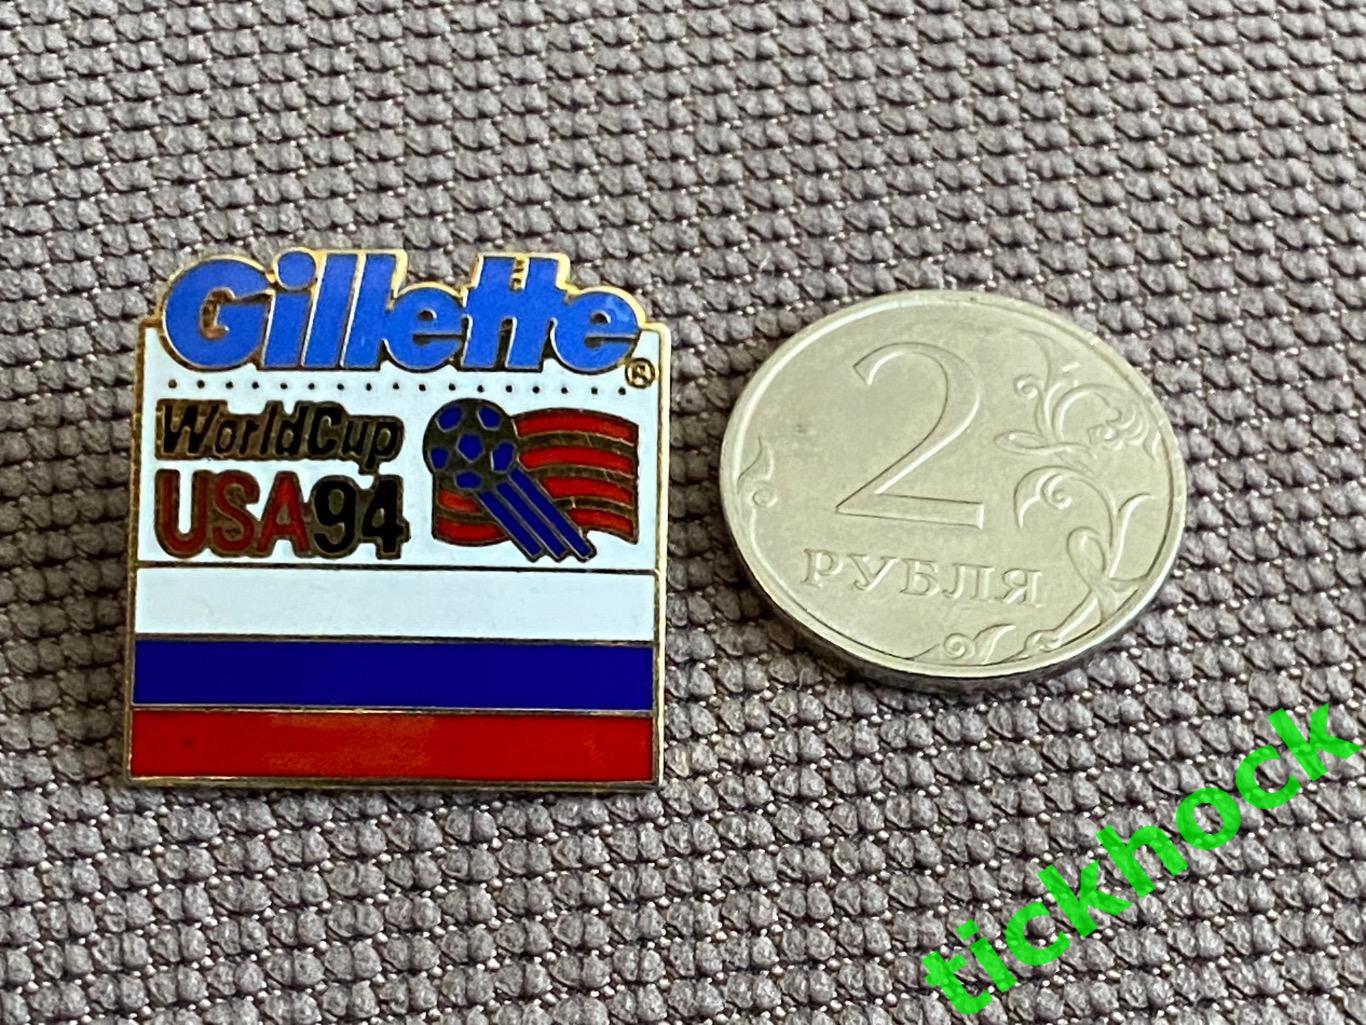 чемпионат мира 1994 Россия спонсор Gillette_ Официальный значок 1